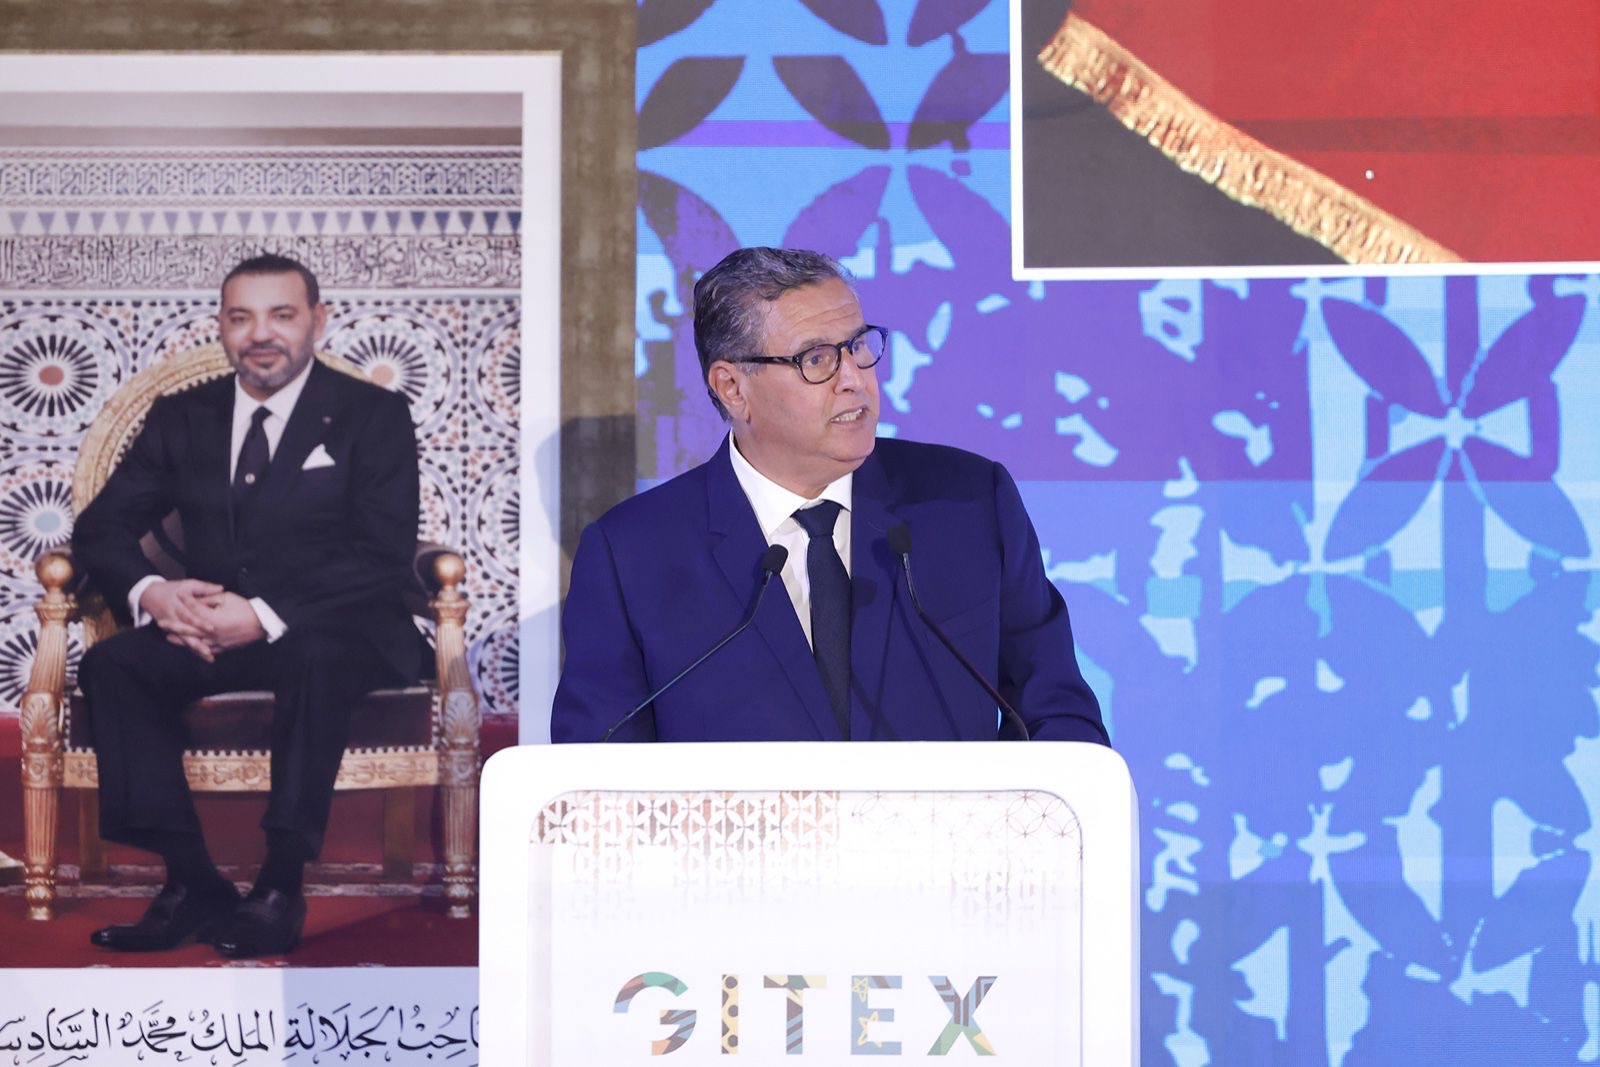 أخنوش. استراتيجية “المغرب الرقمي 2030” ستخرج إلى حيز الوجود خلال أسابيع